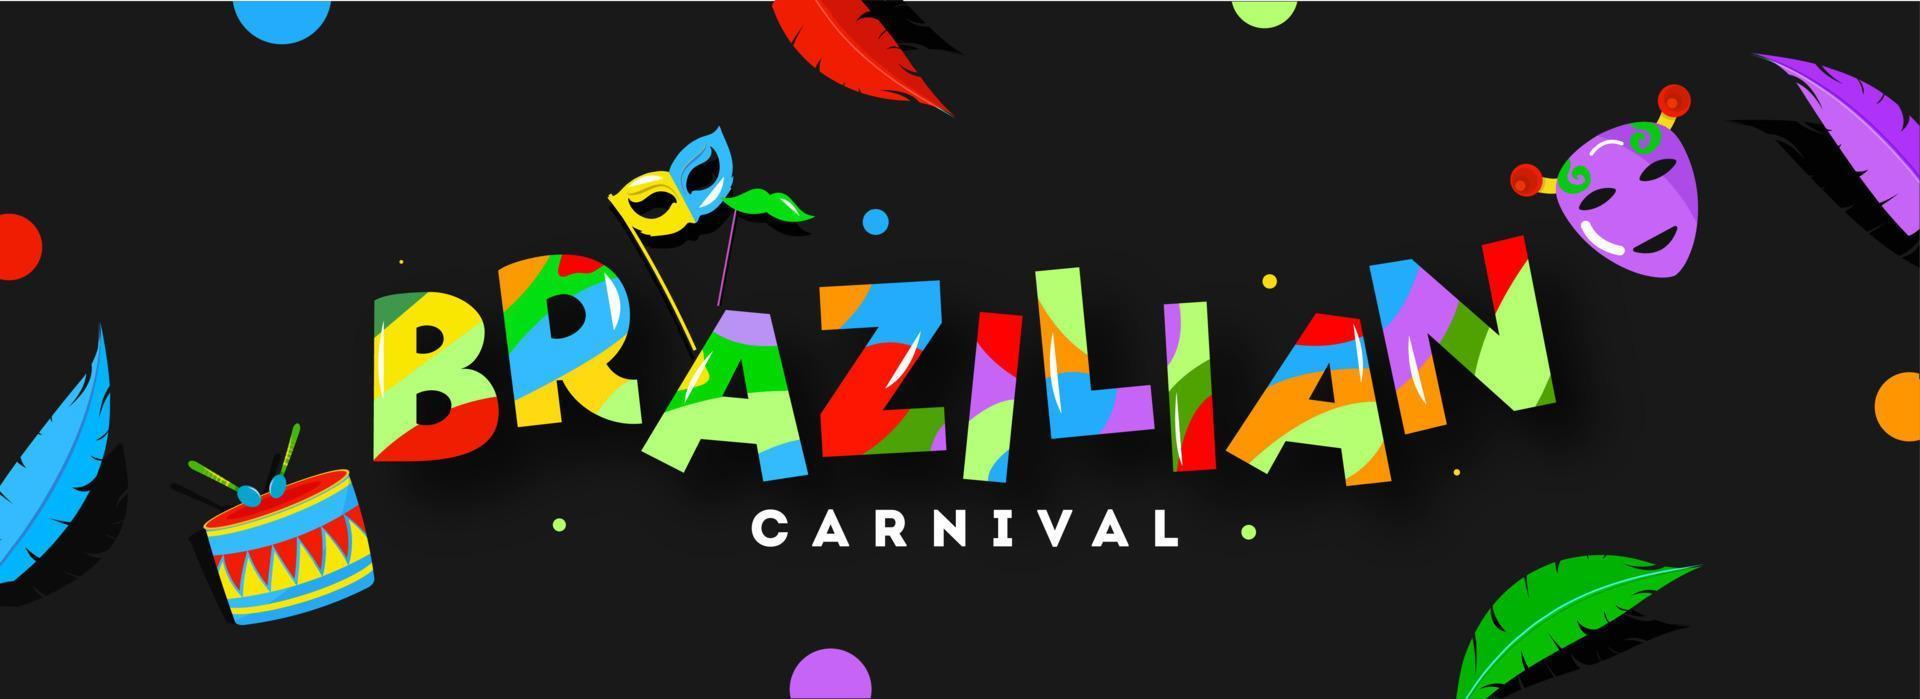 färgrik brasiliansk karneval text med mask, trumma, mustasch pinne och fjäder dekorerad på svart bakgrund. vektor